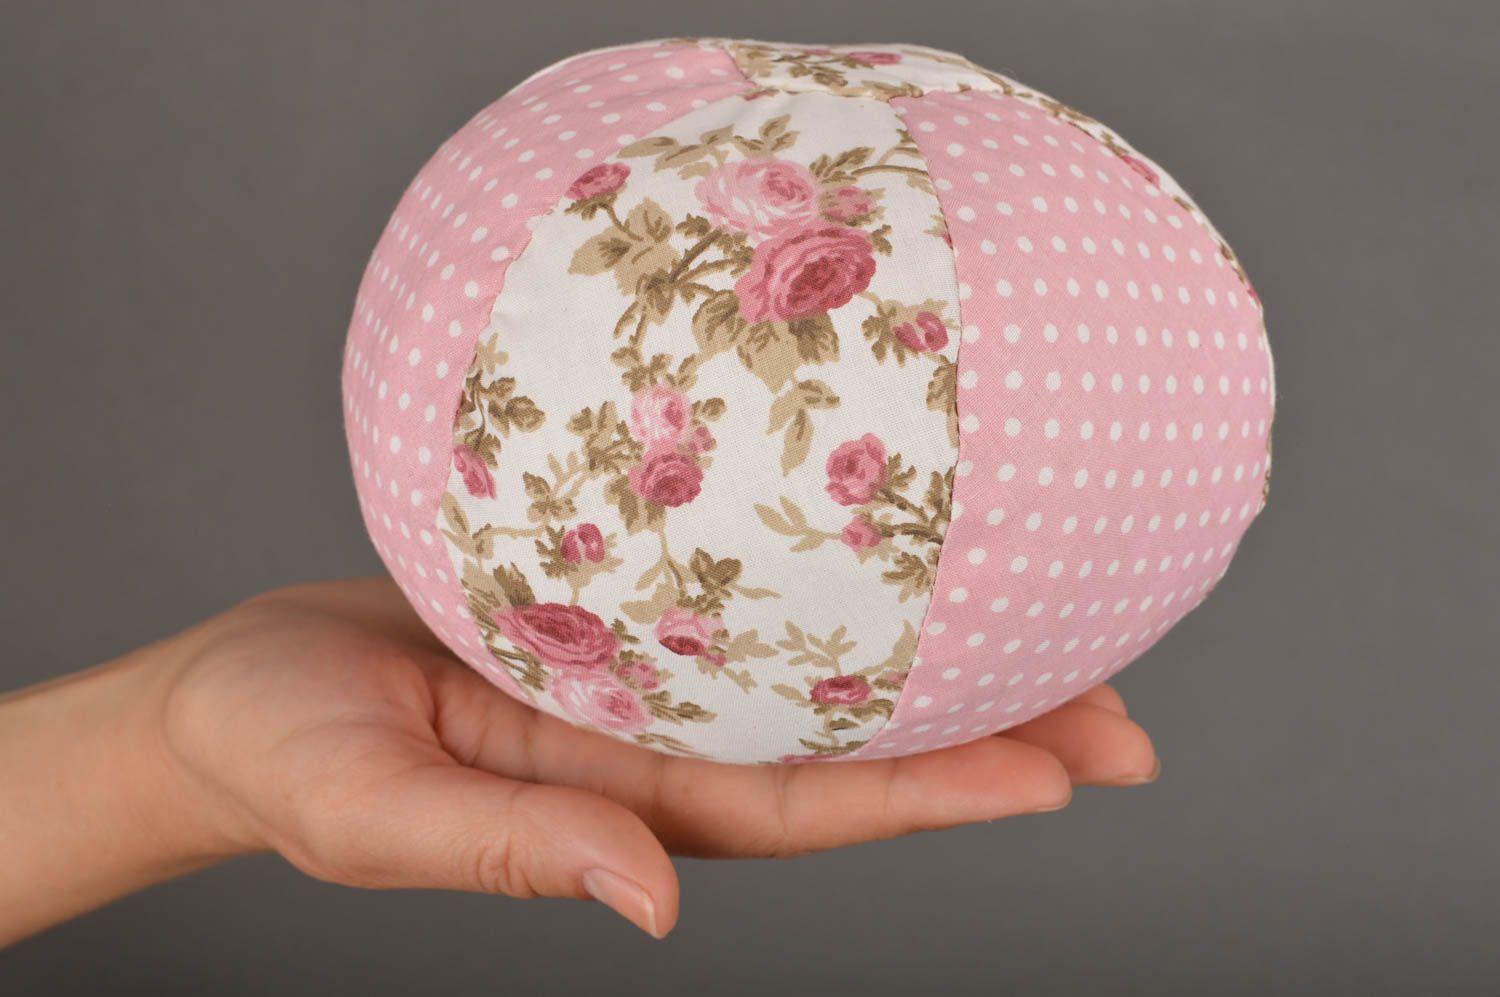 Мягкая игрушка мячик из ткани ручной работы в розовых тонах красивый нежный фото 3